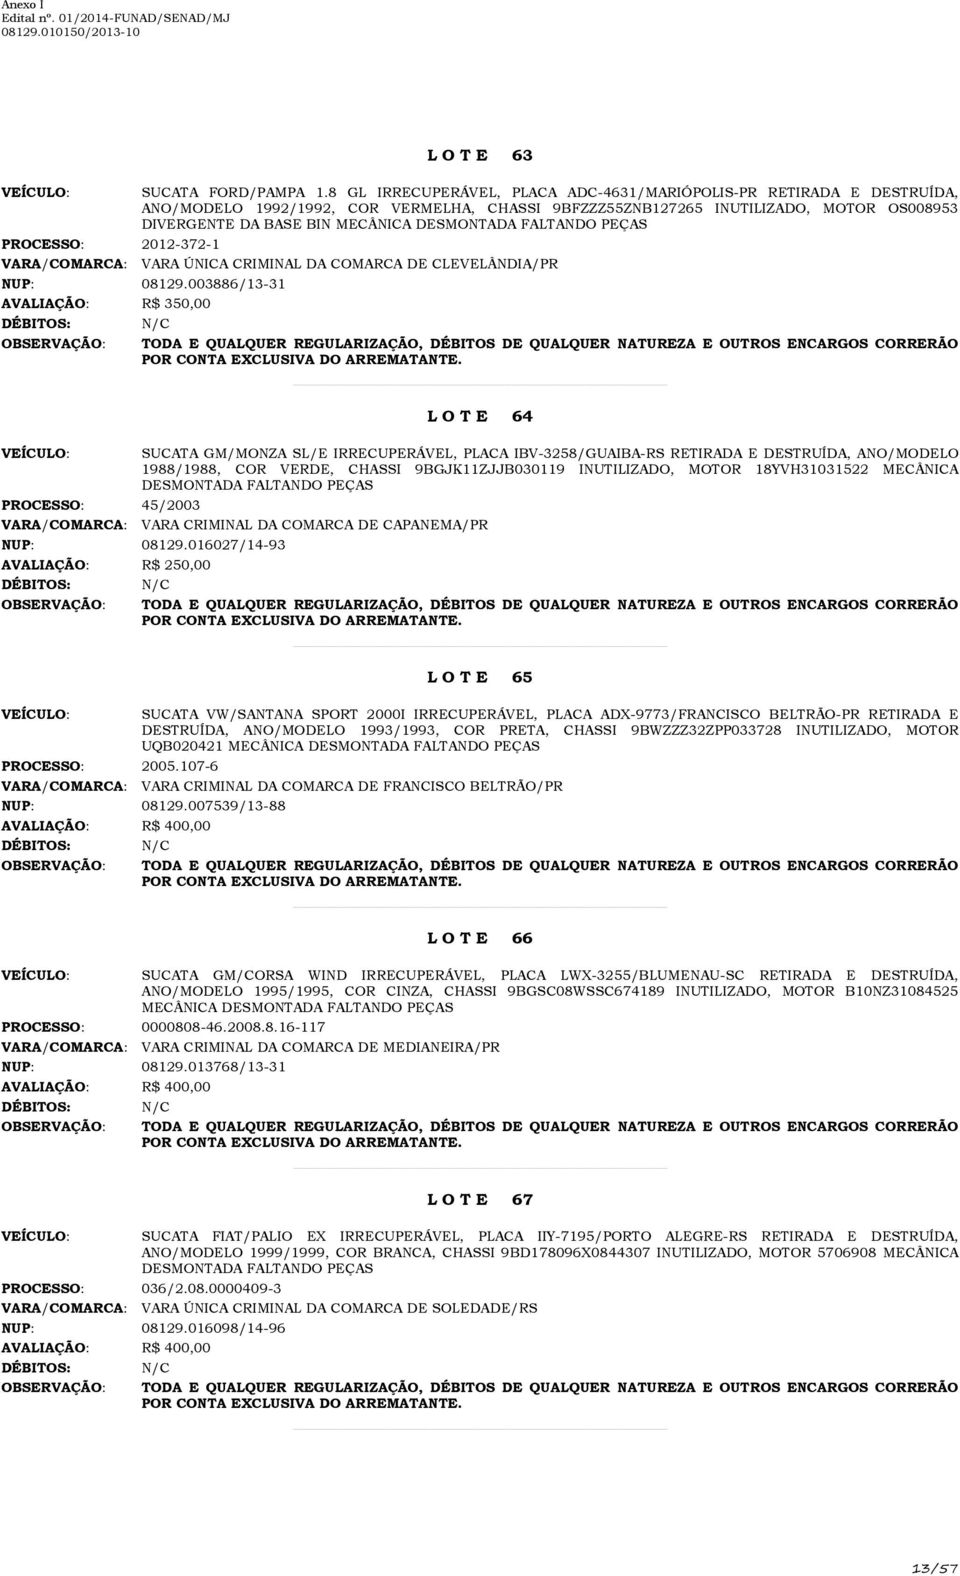 2012-372-1 VARA/COMARCA: VARA ÚNICA CRIMINAL DA COMARCA DE CLEVELÂNDIA/PR NUP: 08129.